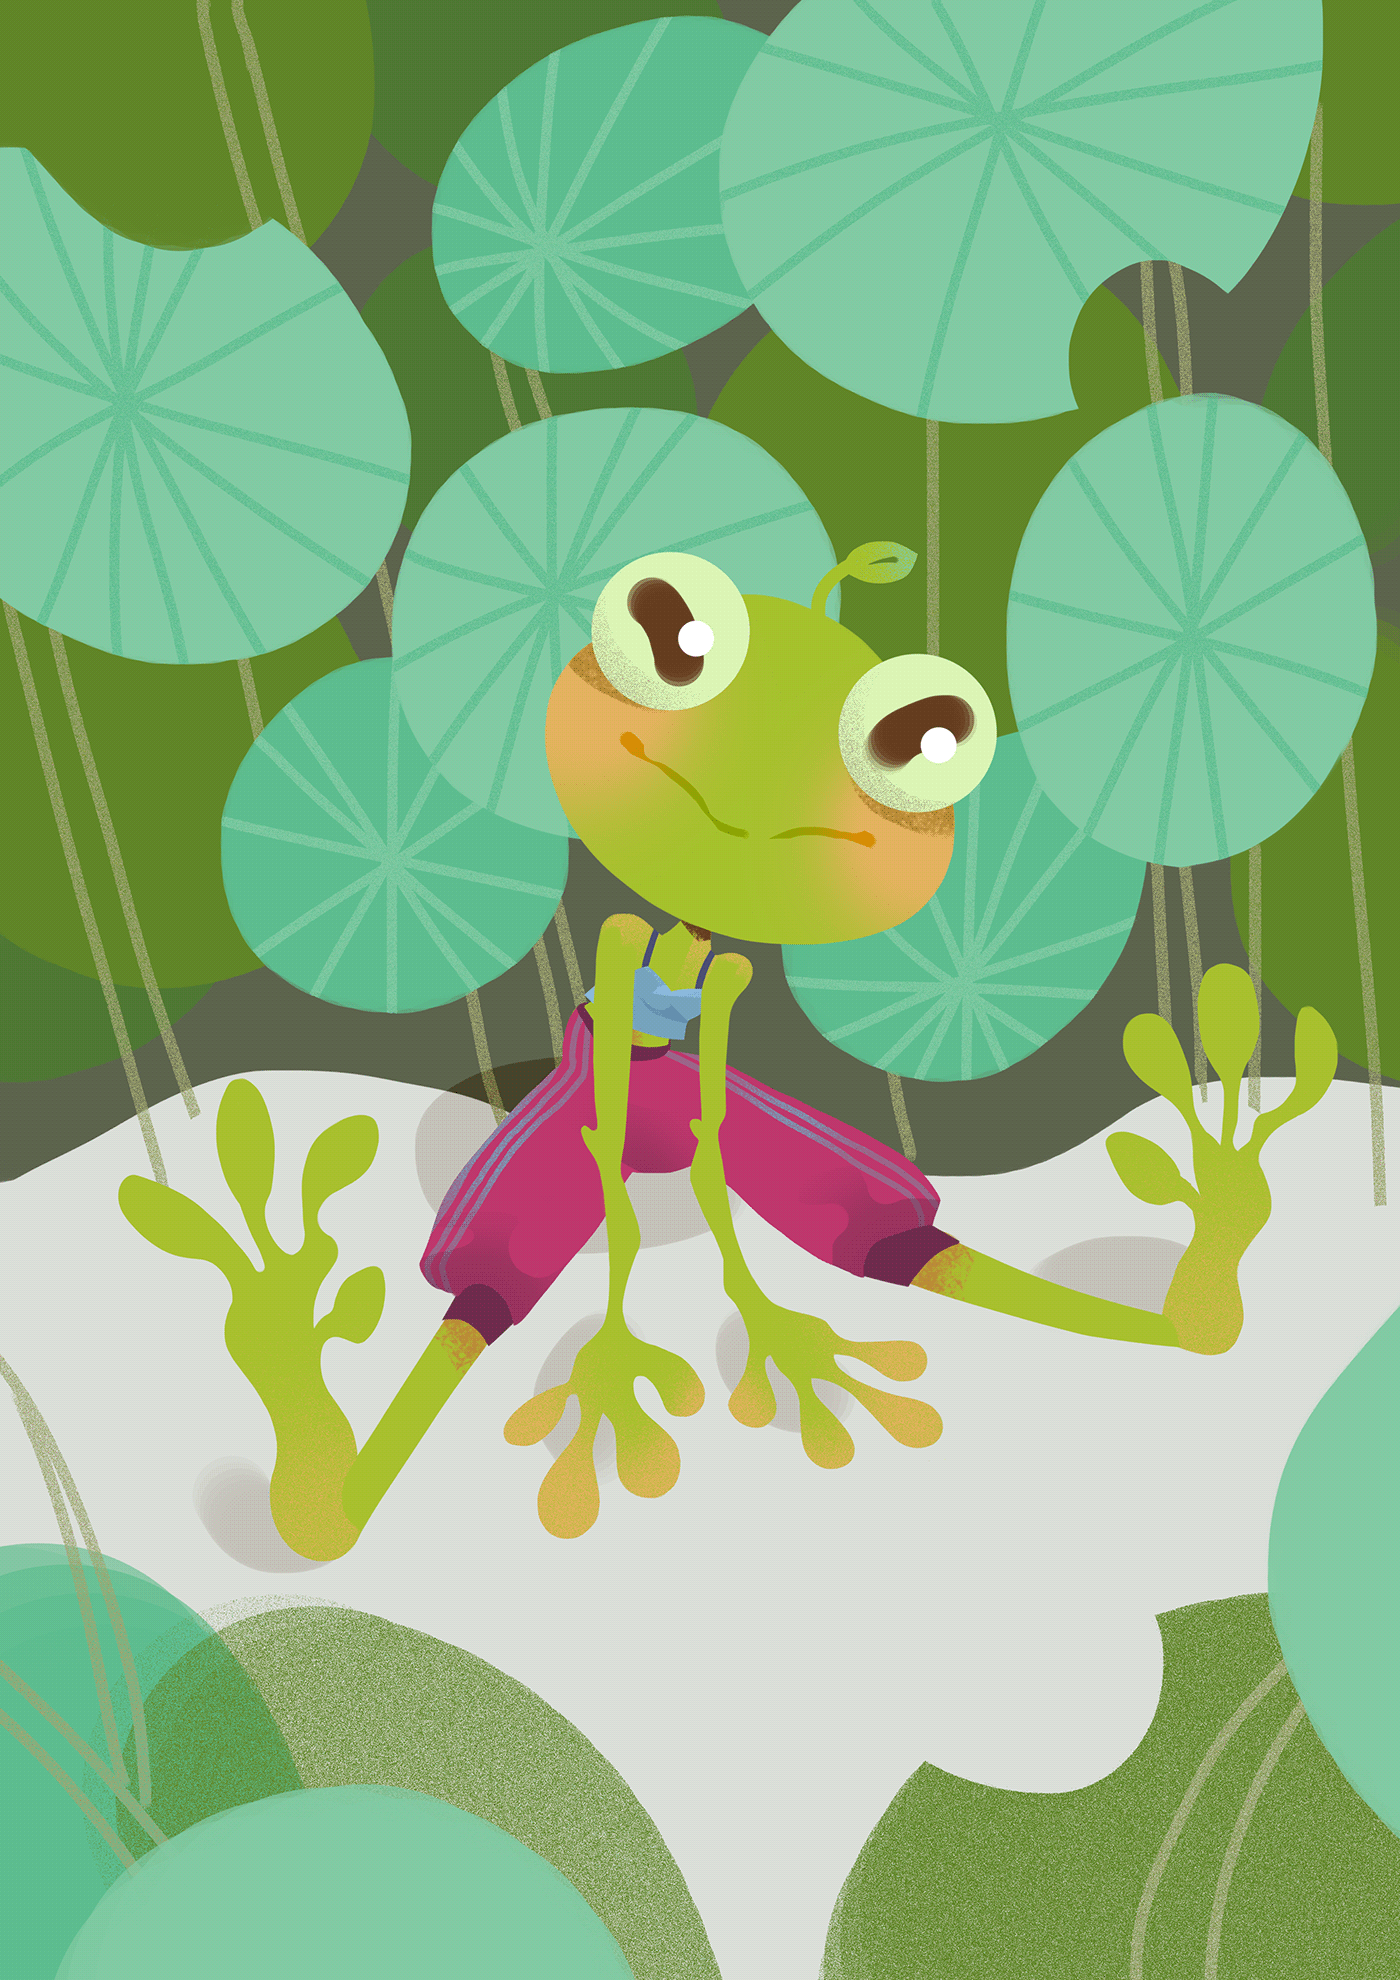 frog лягушка